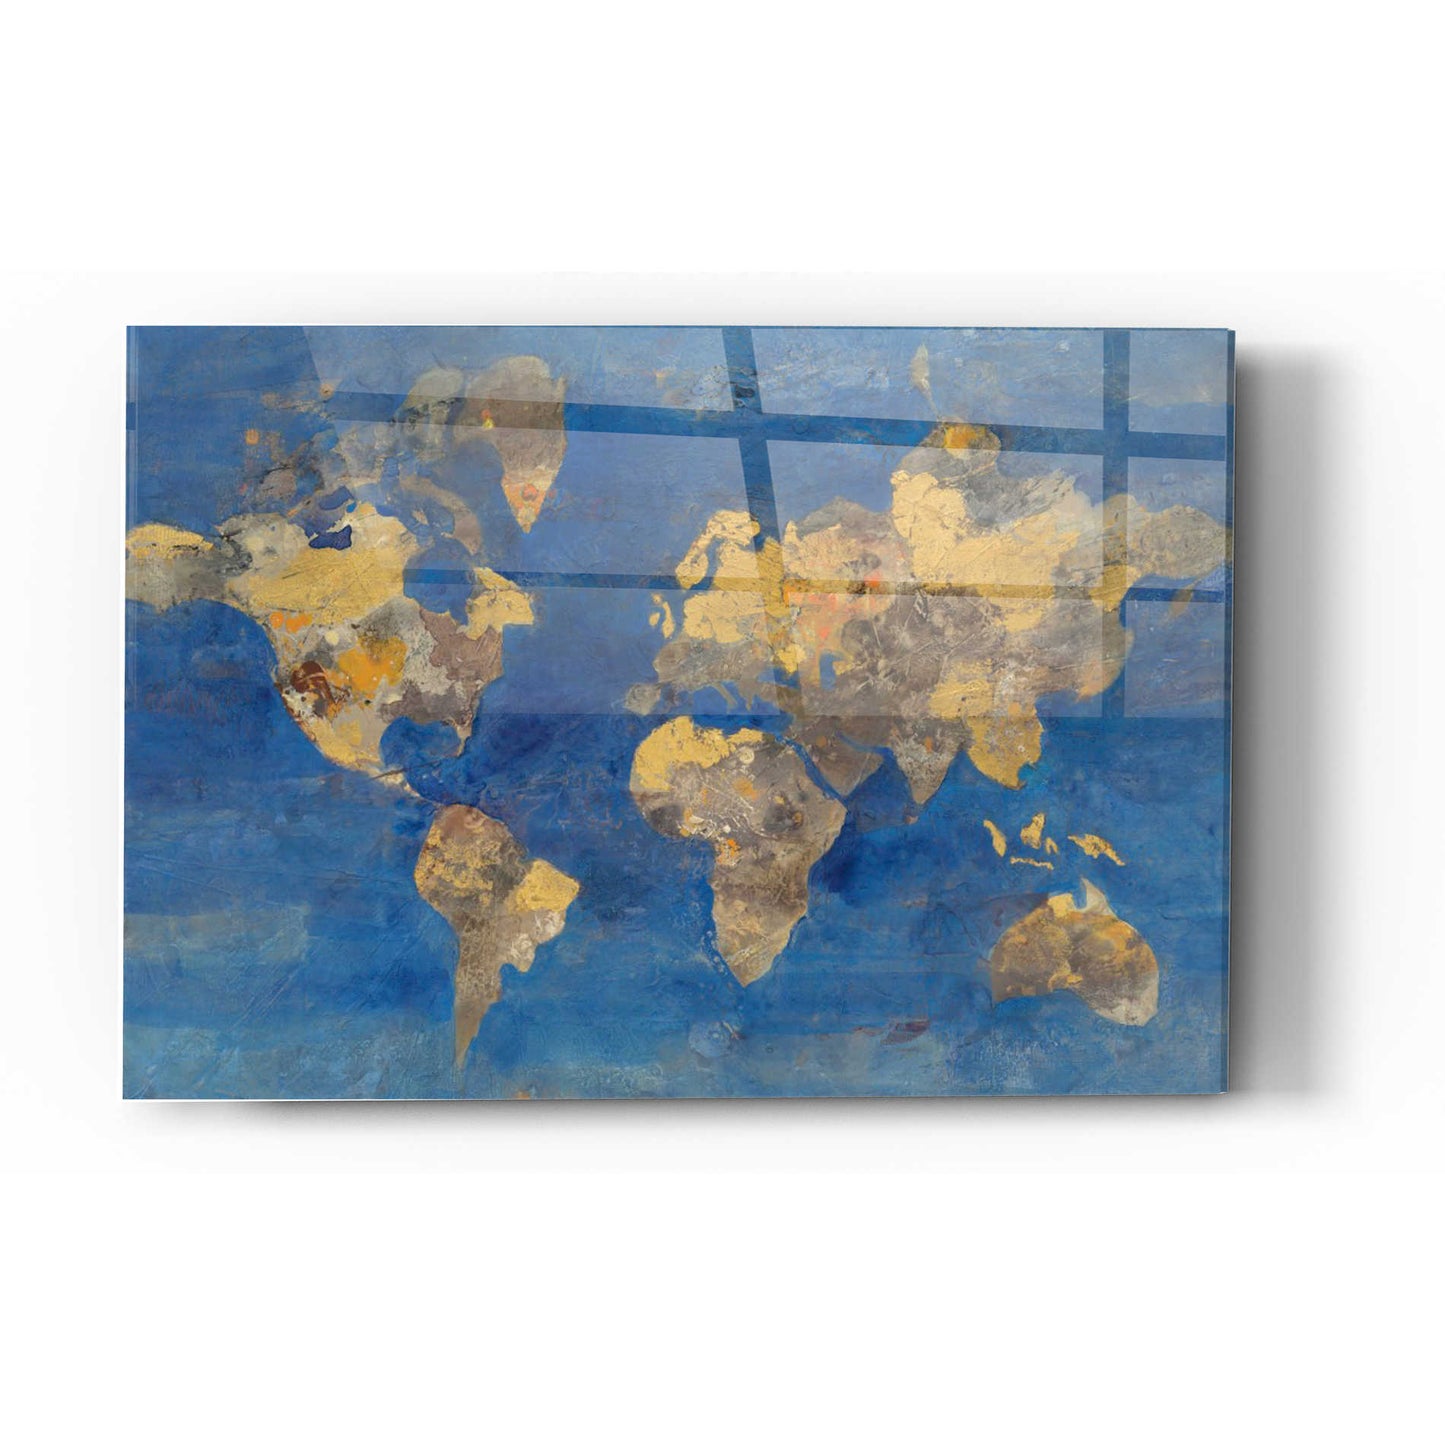 Epic Art 'Blue World' by Albena Hristova, Acrylic Glass Wall Art,12 x 16